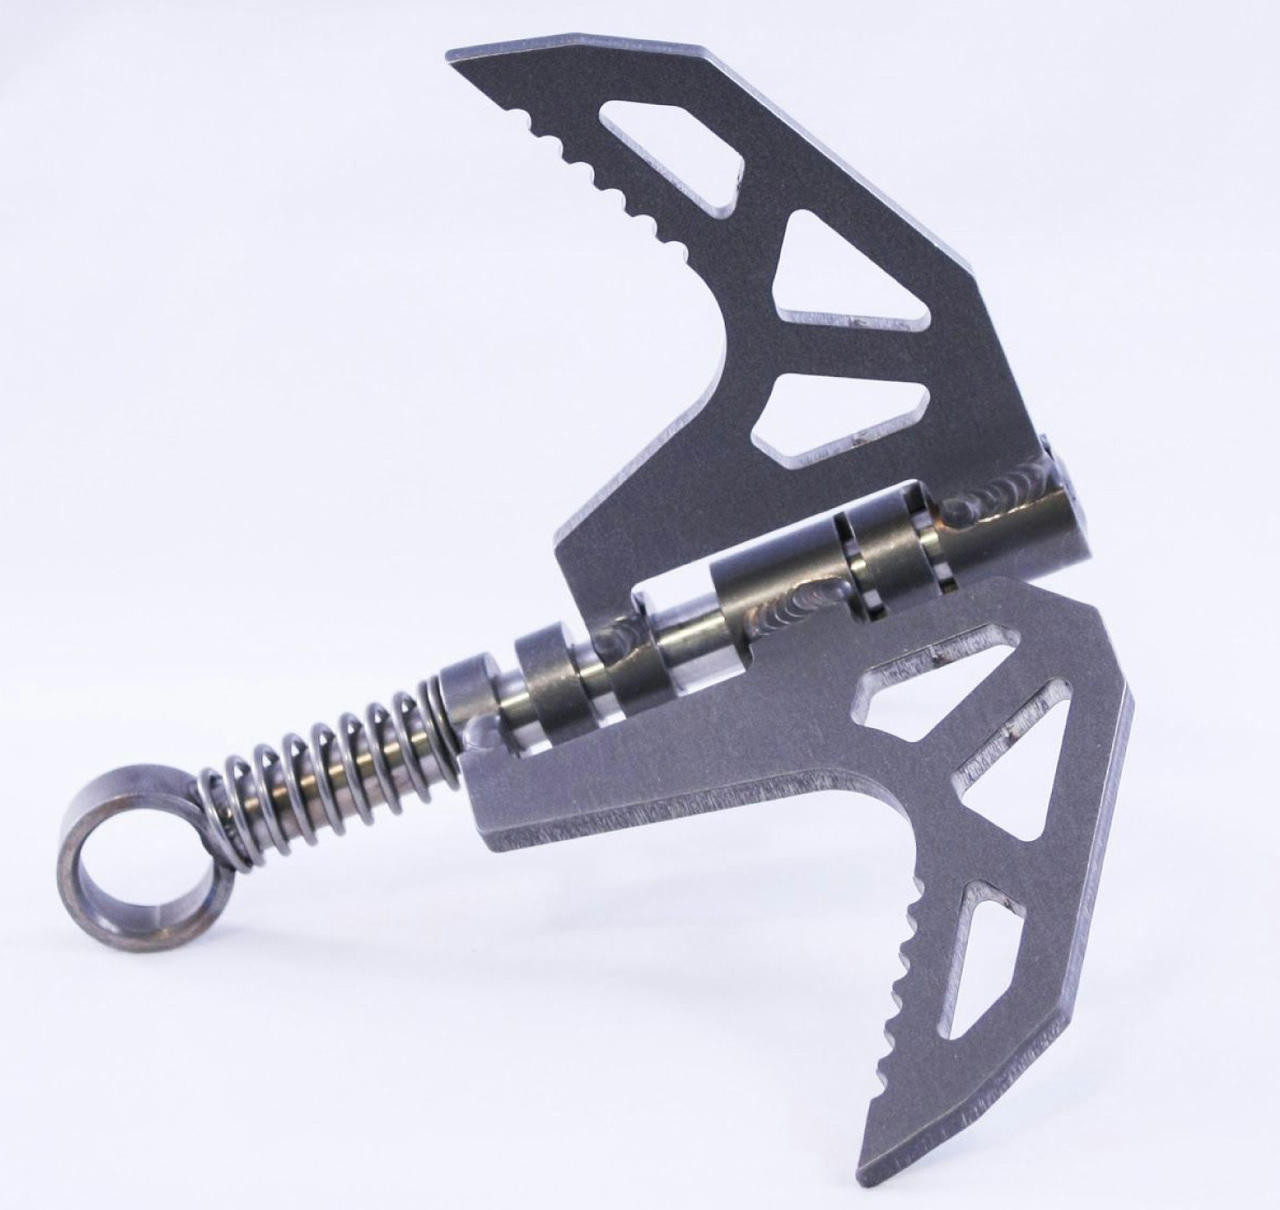 Tactical Grappling Hook - Skeleton EOD Gear HAL Kits